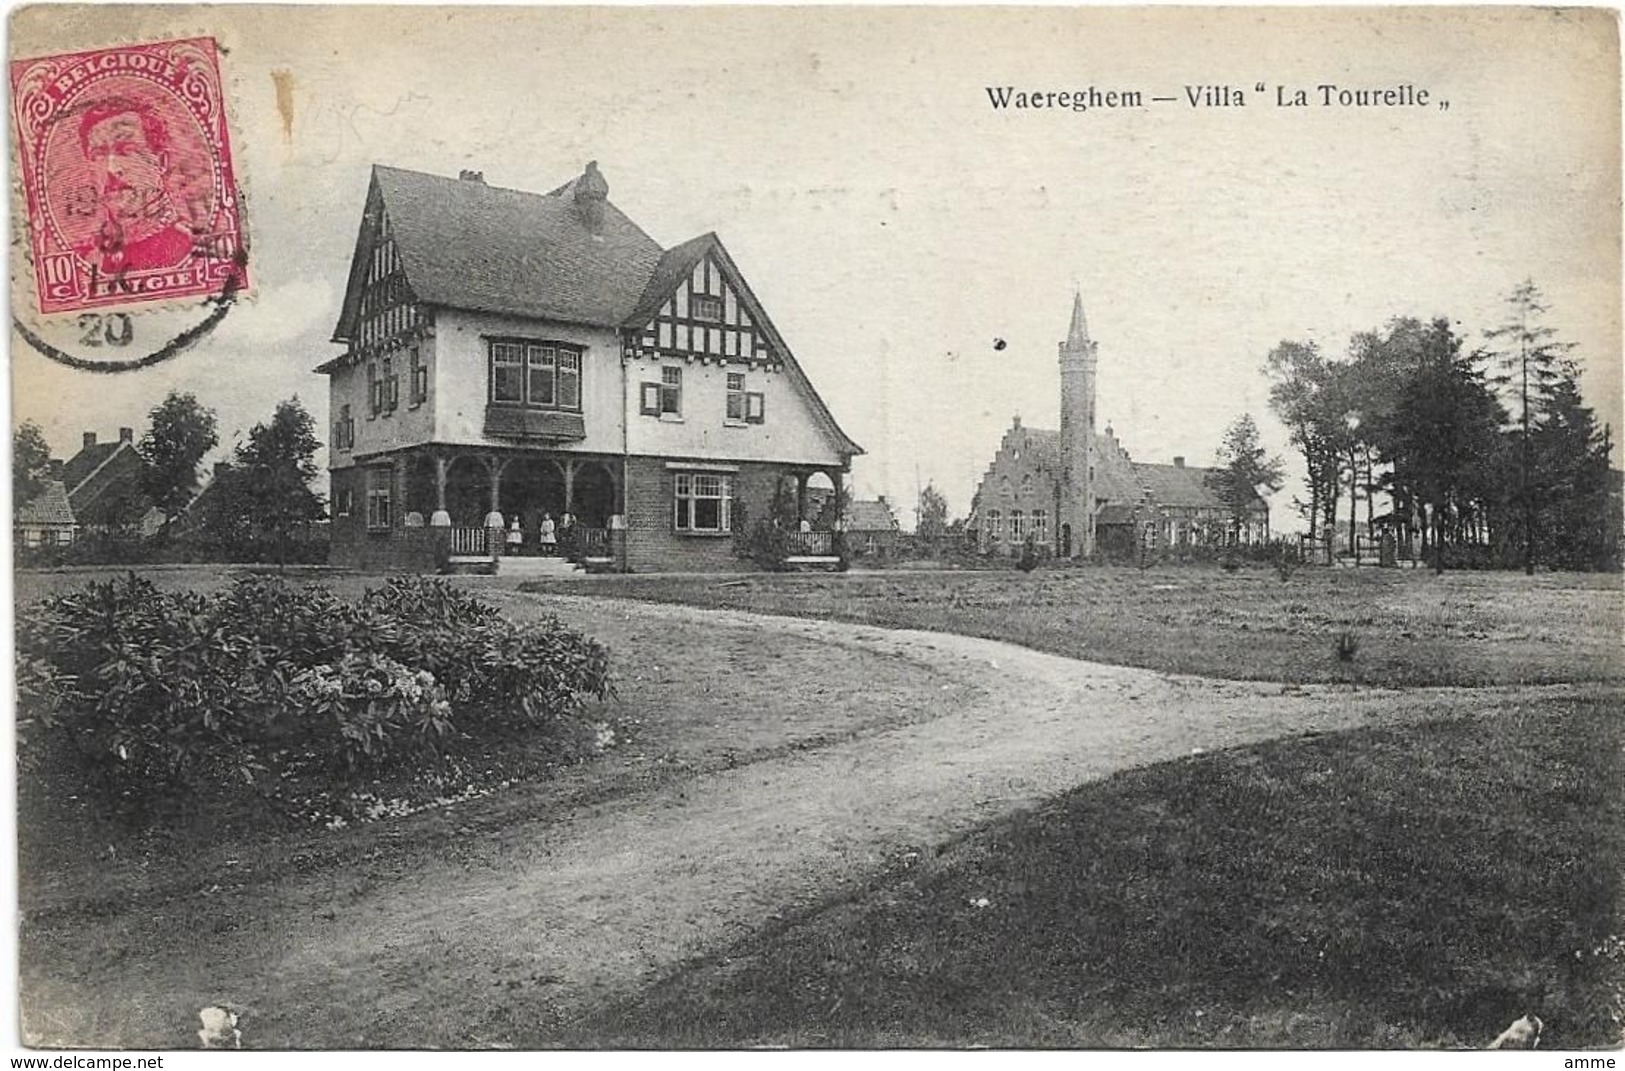 Waregem  -  Waereghem  *  Villa "La Tourelle" - Waregem